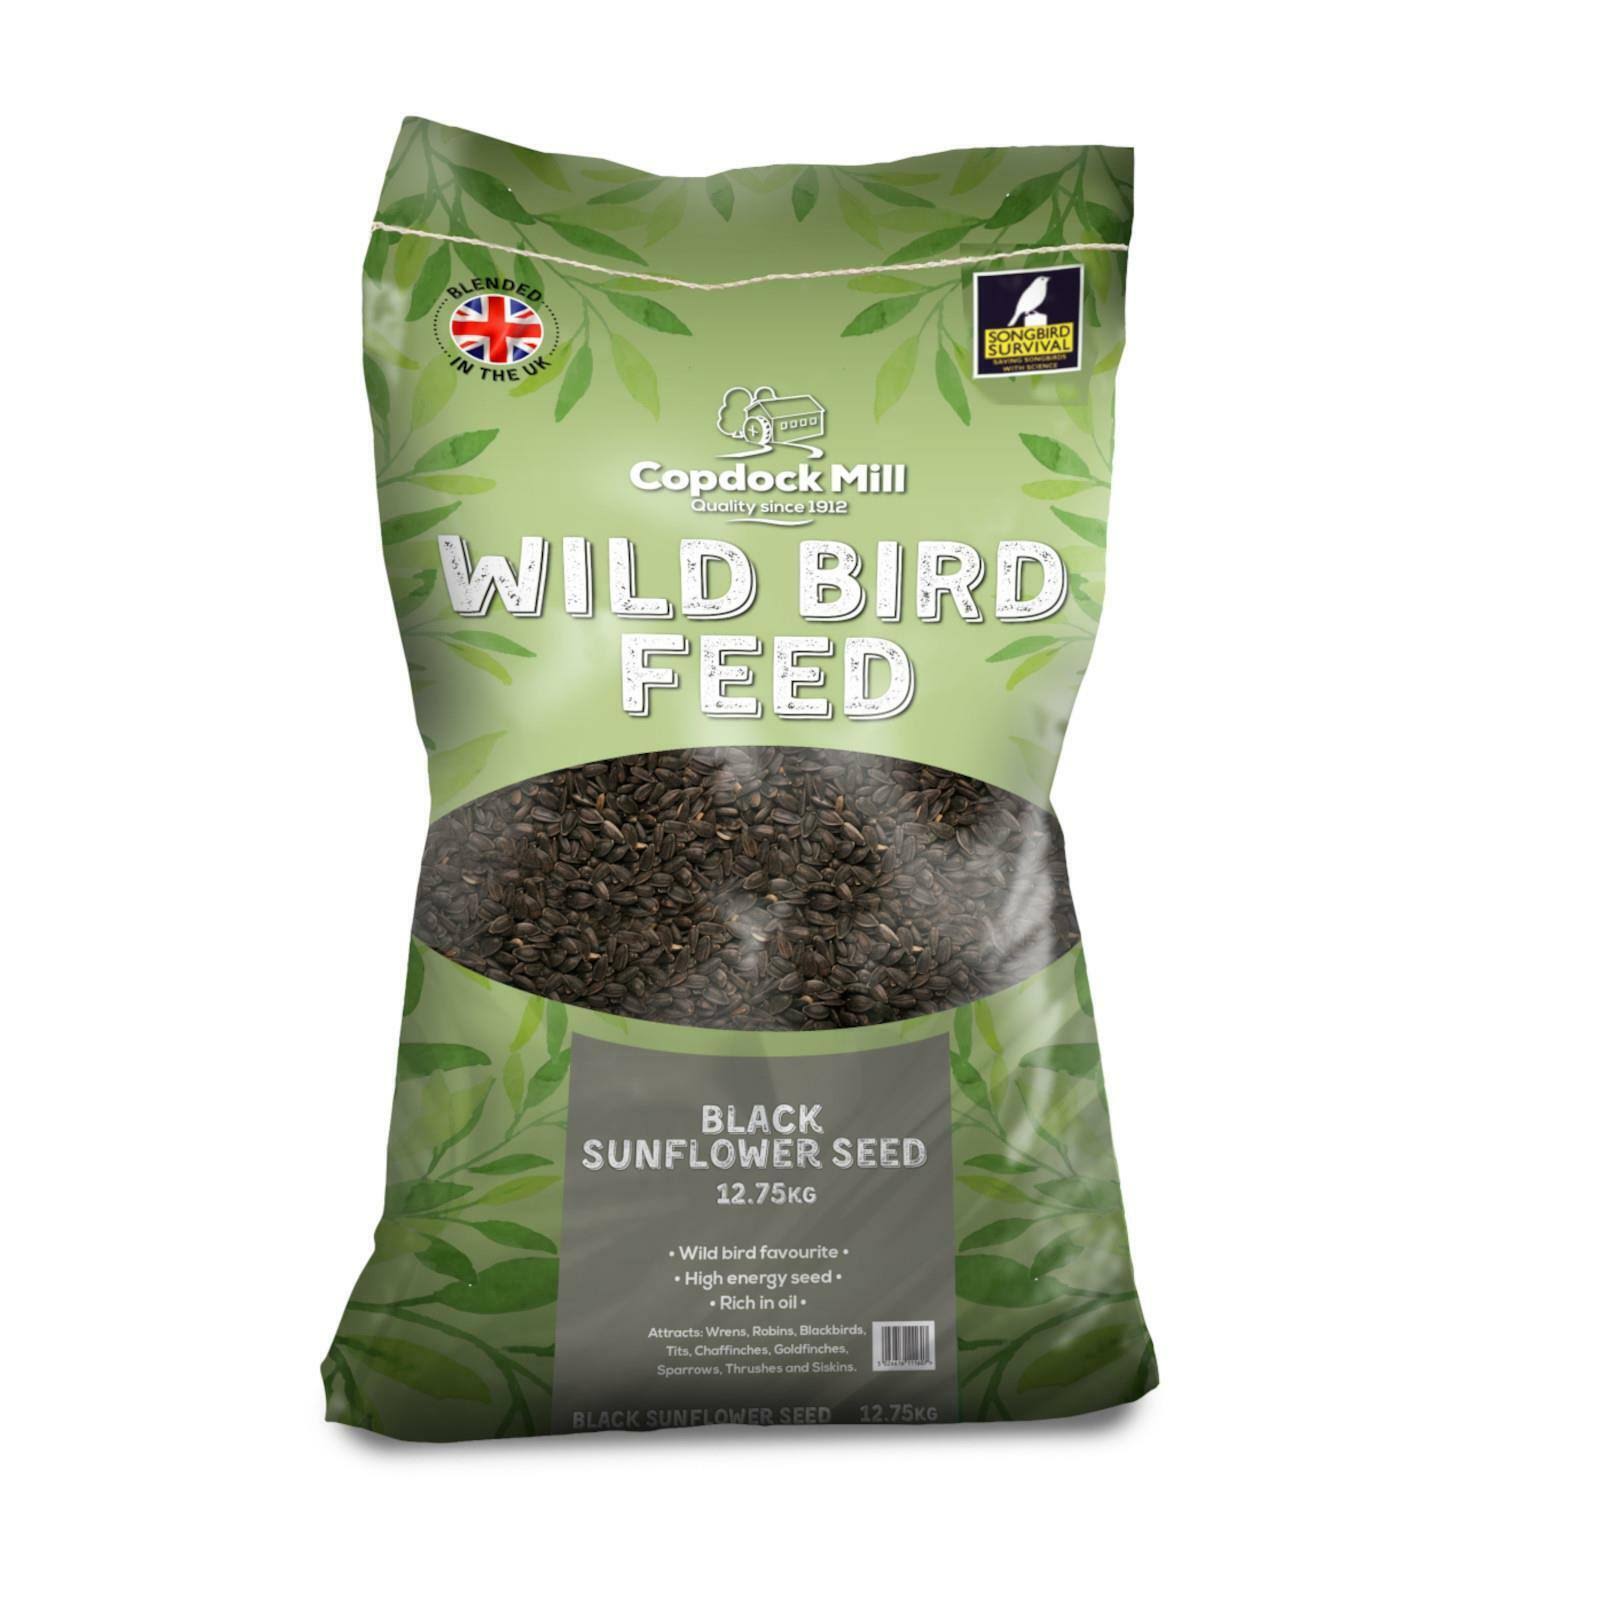 Copdock Mill Wild Bird Black Sunflower Seeds 12.75kg